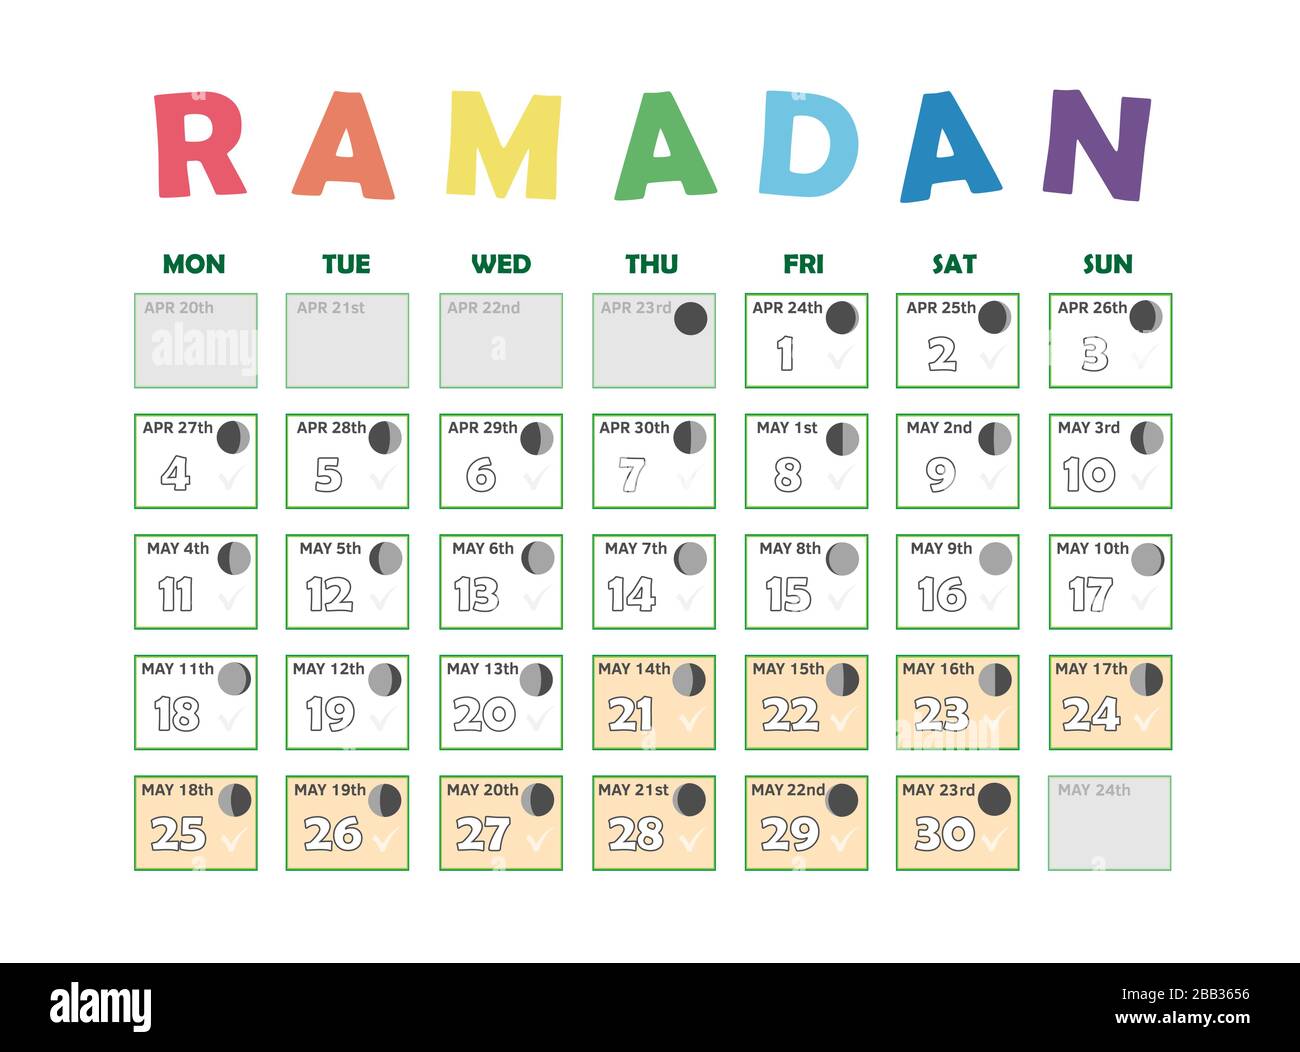 Ramadan Kalender 2020. Fastenkalender, Mondzyklusphasen, Neumond. 30 Tage des islamischen Heiligen Monats Ramadan. Vektorgrafik-Abbildung Stock Vektor